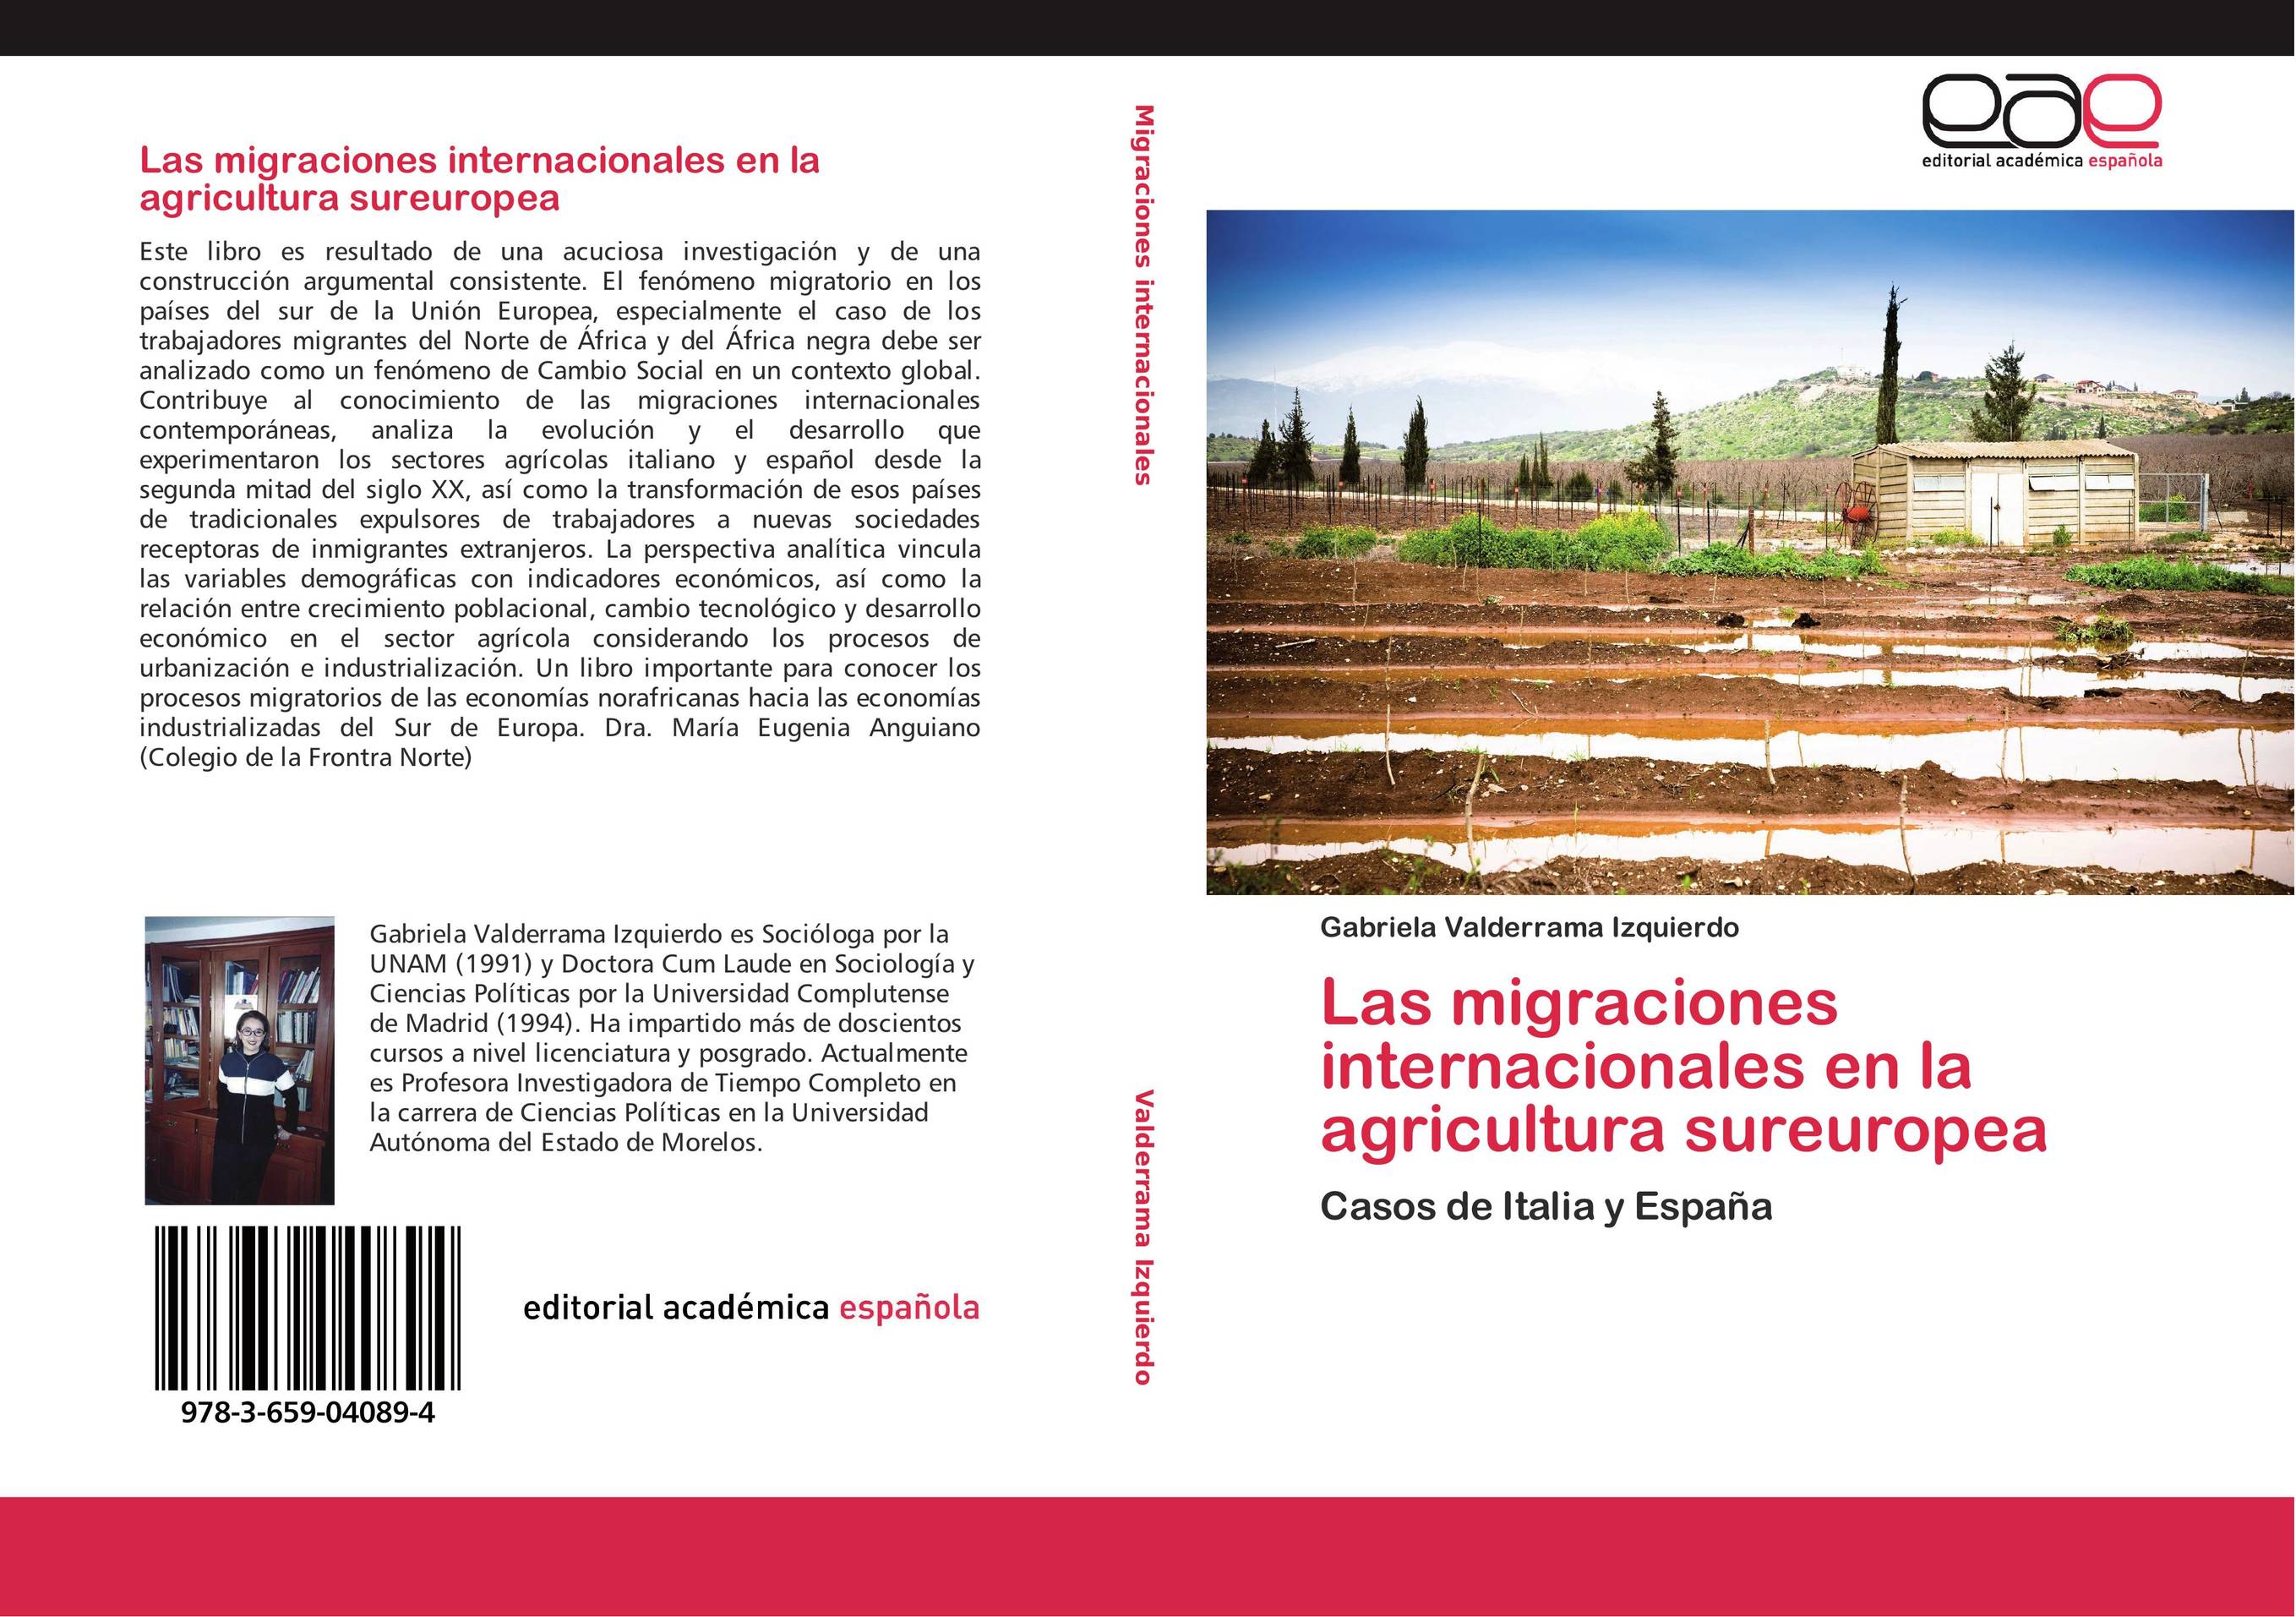 Las migraciones internacionales en la agricultura sureuropea